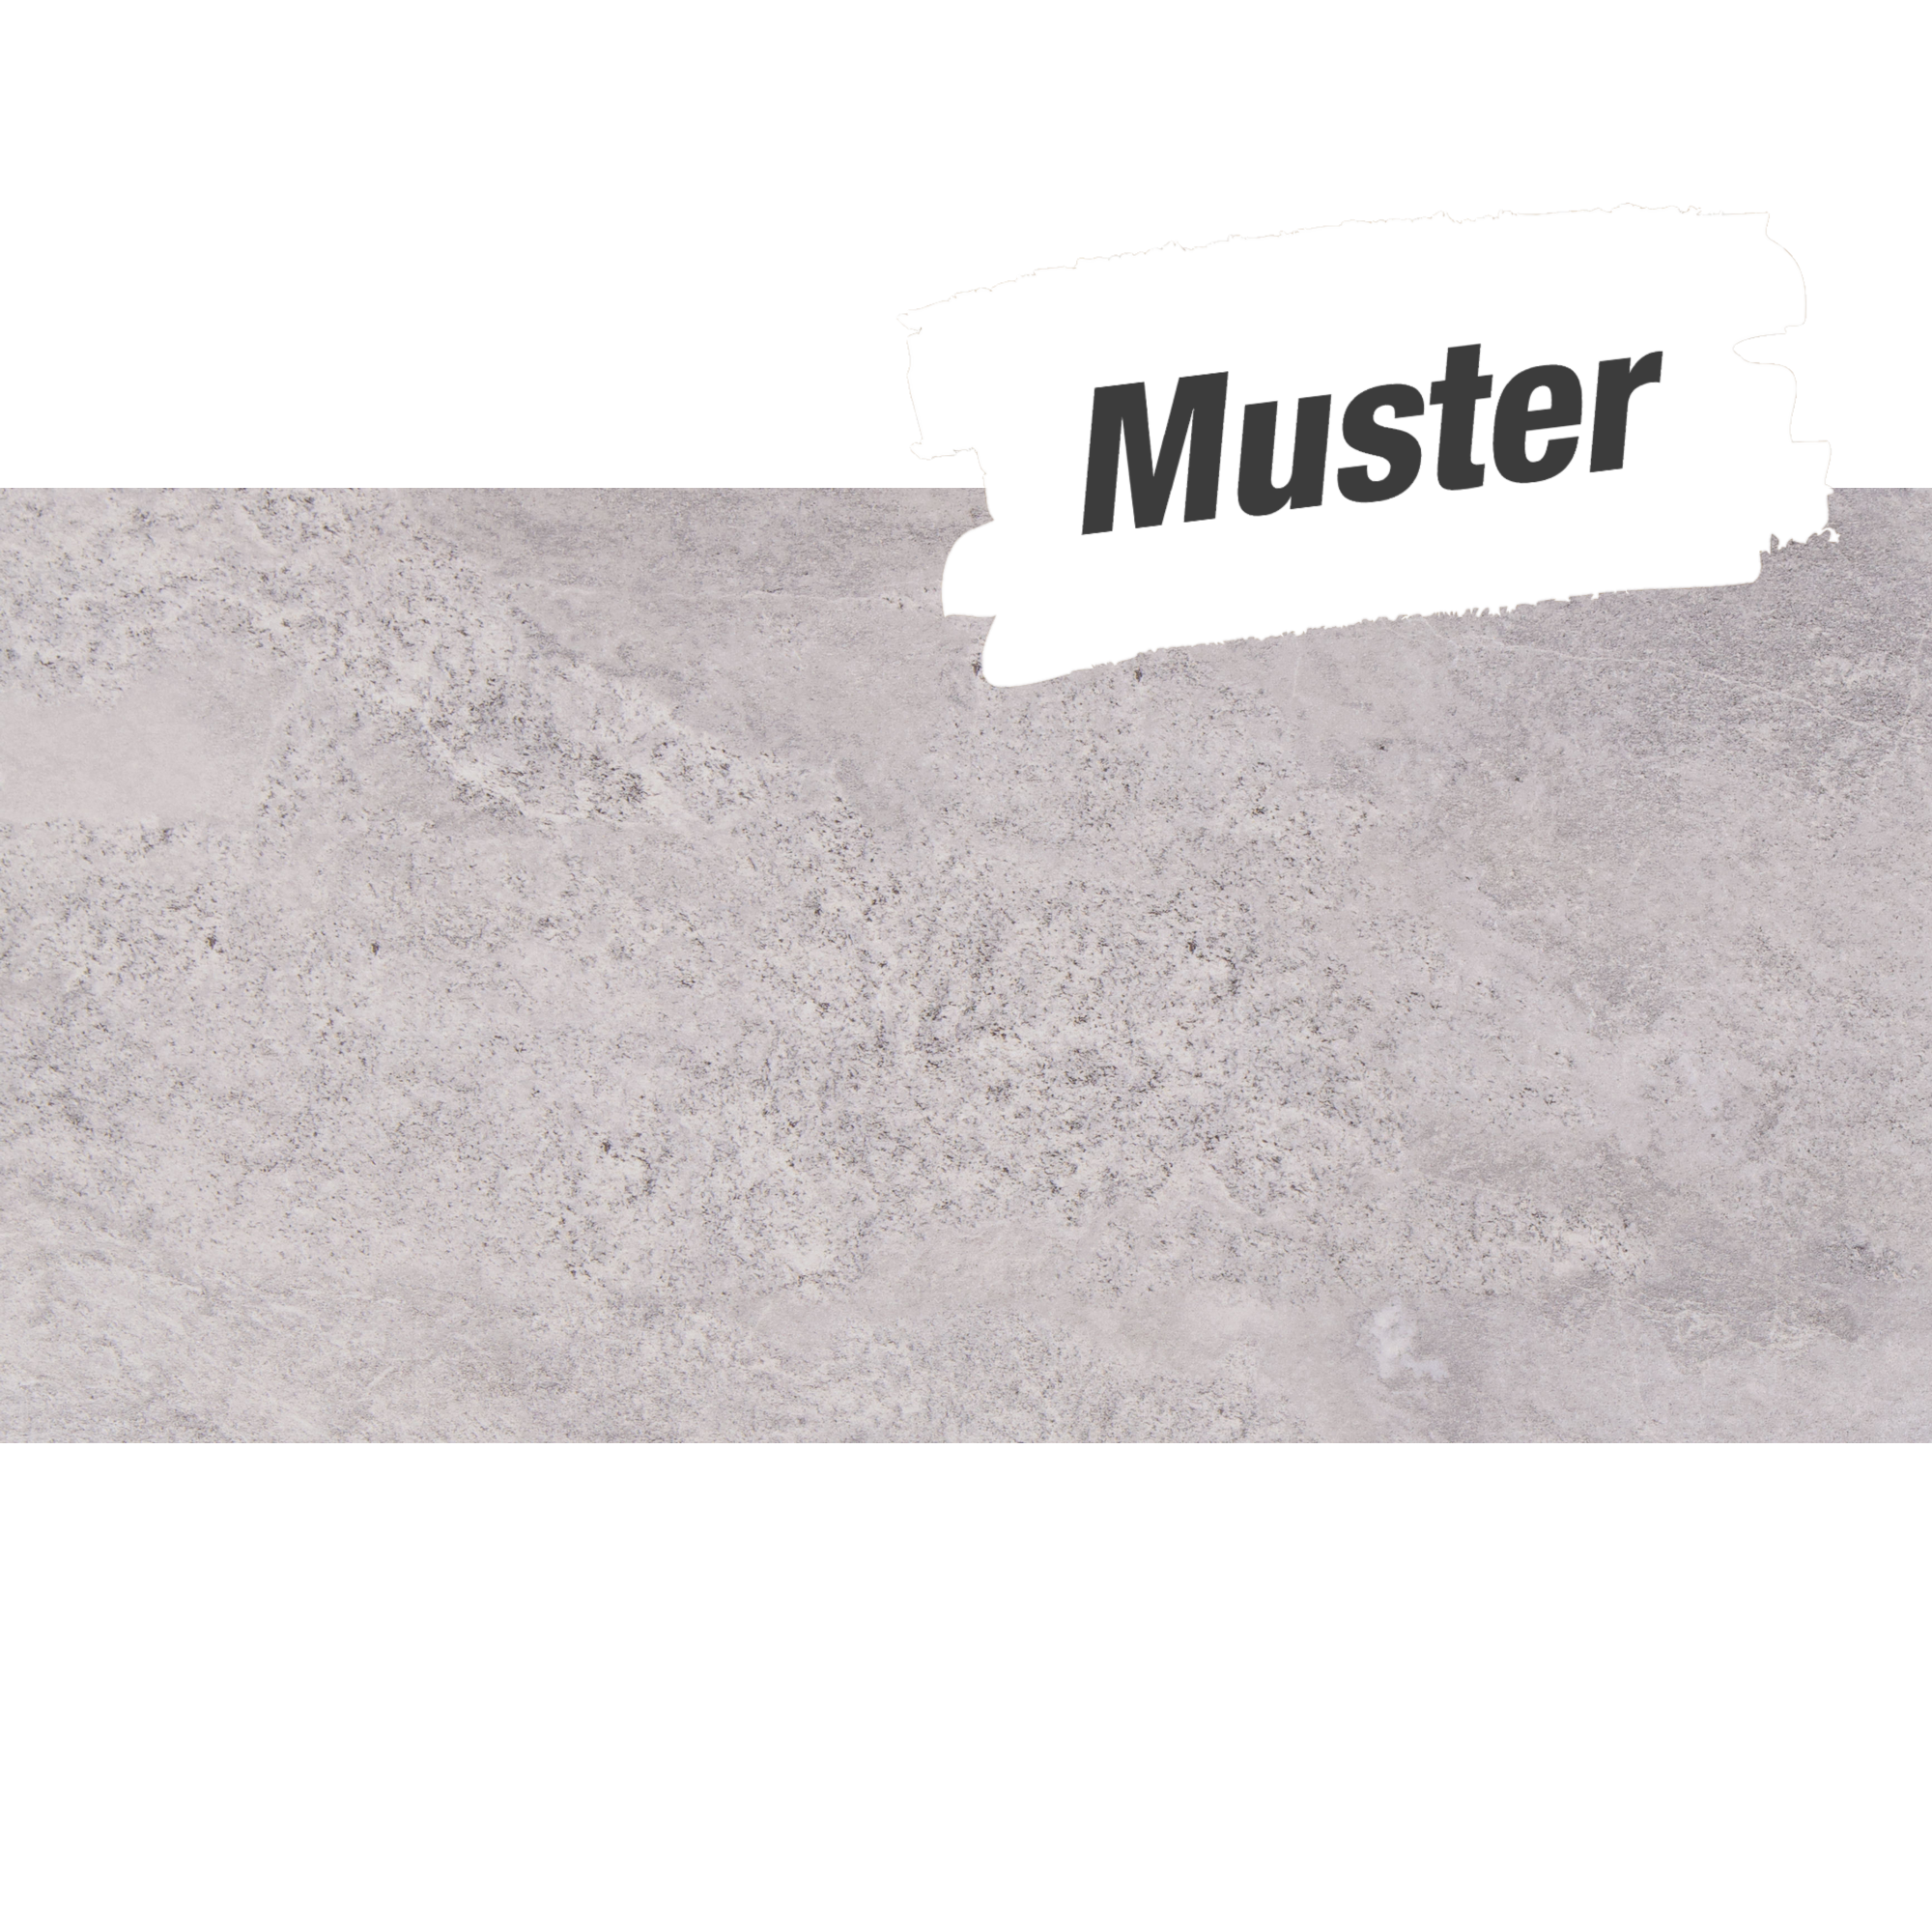 Muster zur Bodenfliese 'Tempio' Feinsteinzeug grau-braun 30,2 x 60,4 cm + product picture